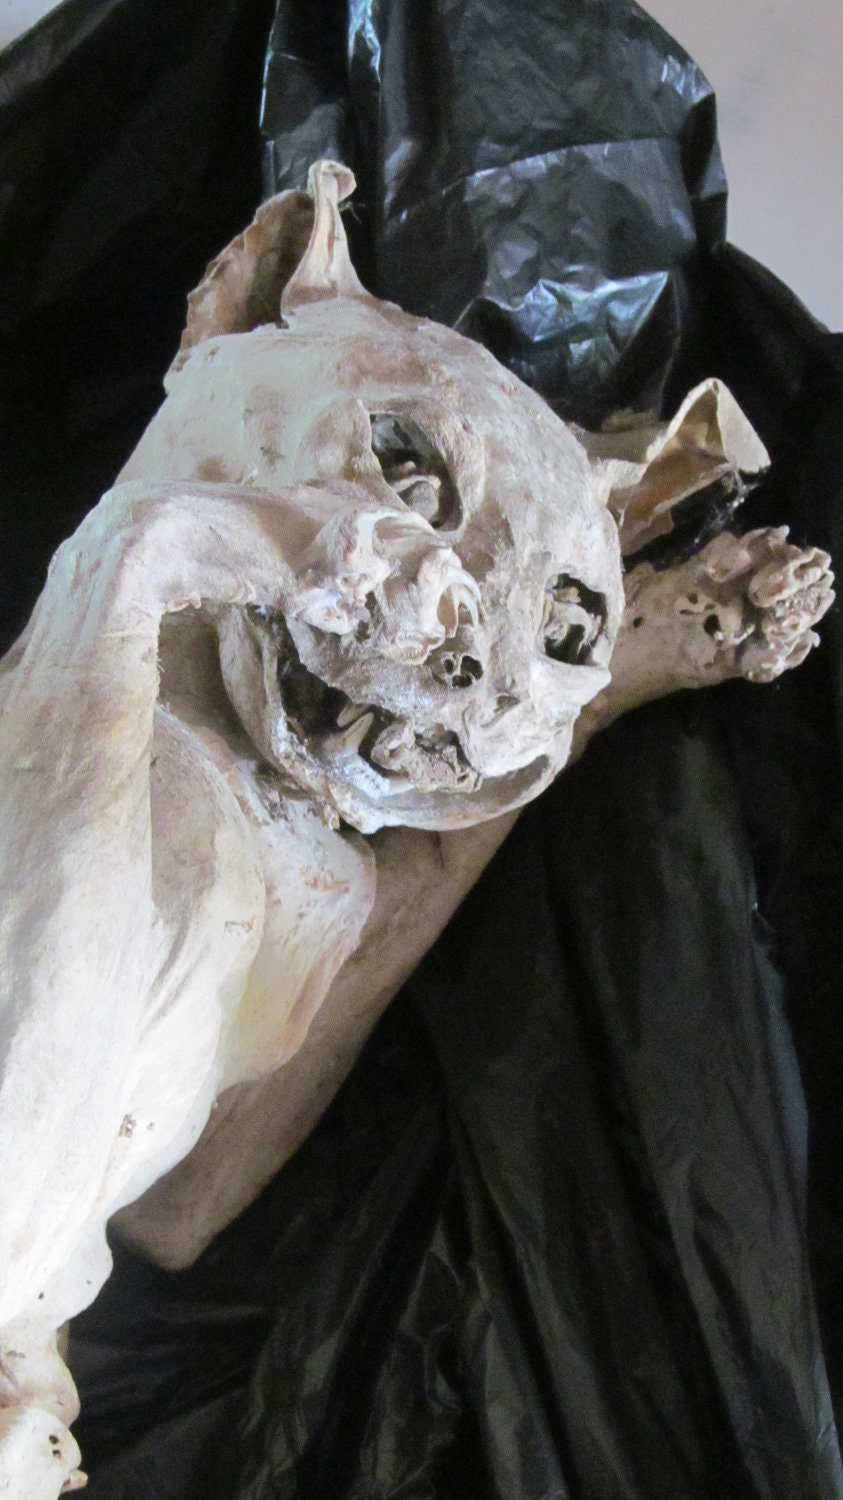 Mummified Cat with mummified eyeballs & tongue